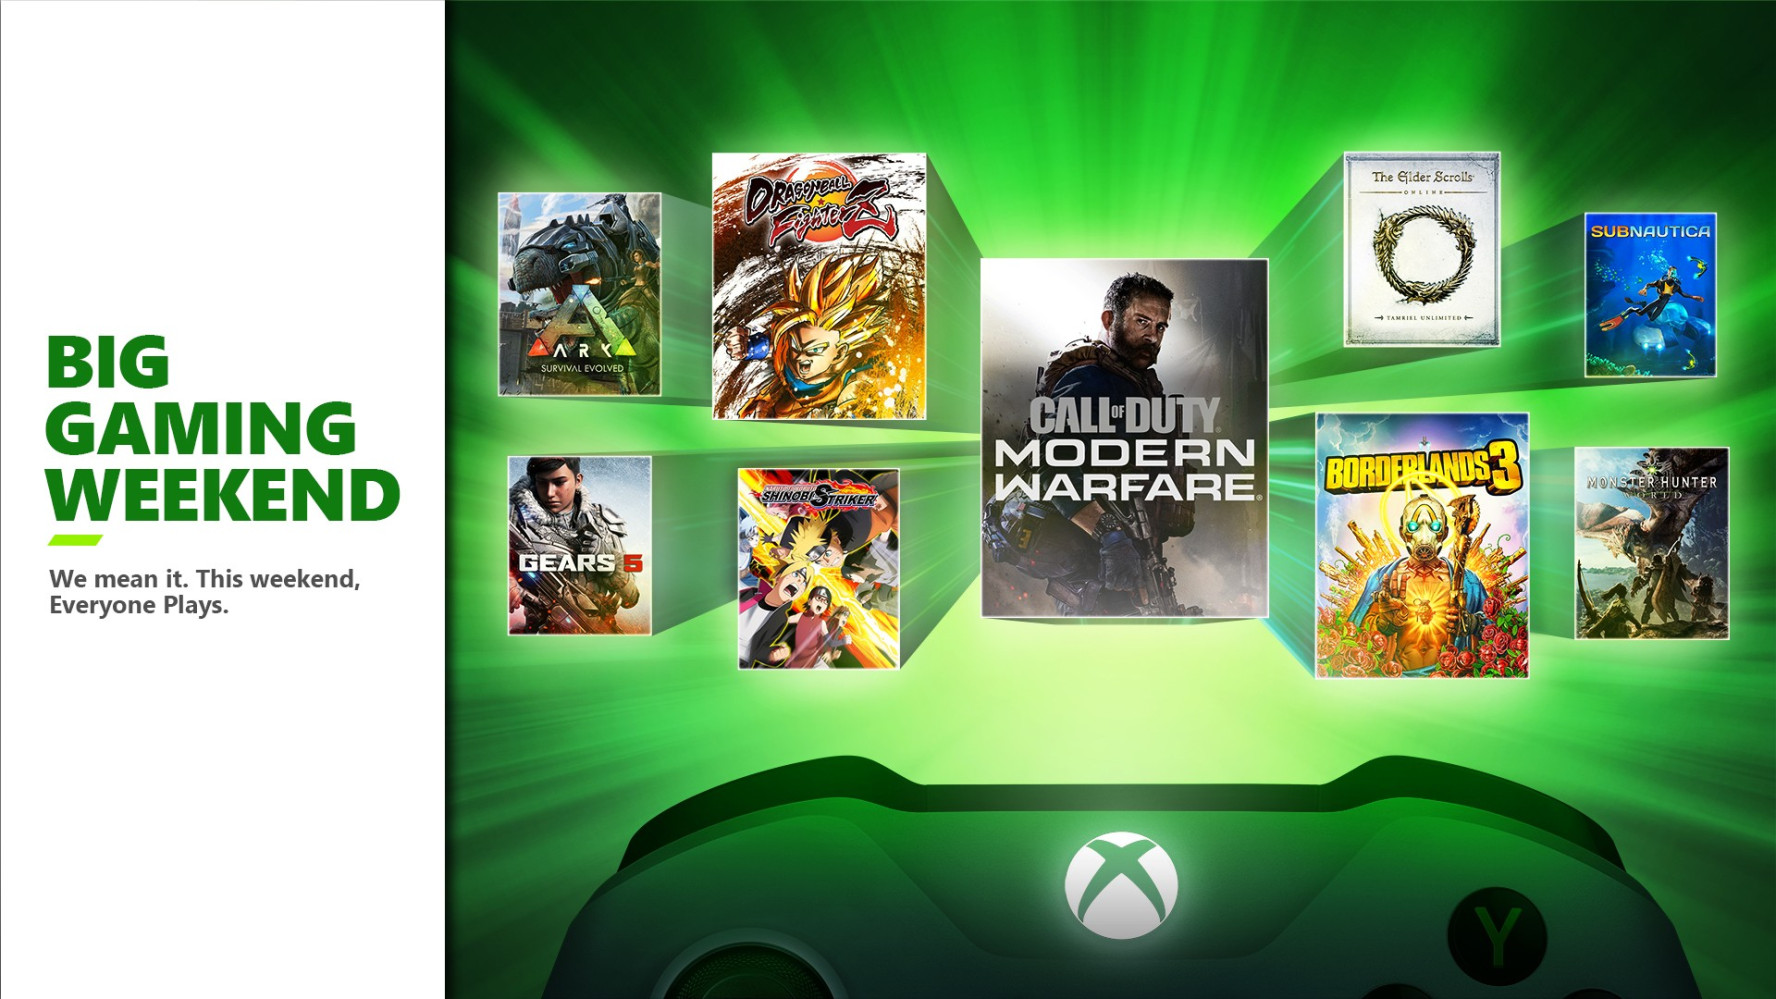 Spoločnosť Xbox ohlasuje veľký herný víkend. Pre všetkých sú k dispozícii bezplatné hry Game Pass a online multiplayer